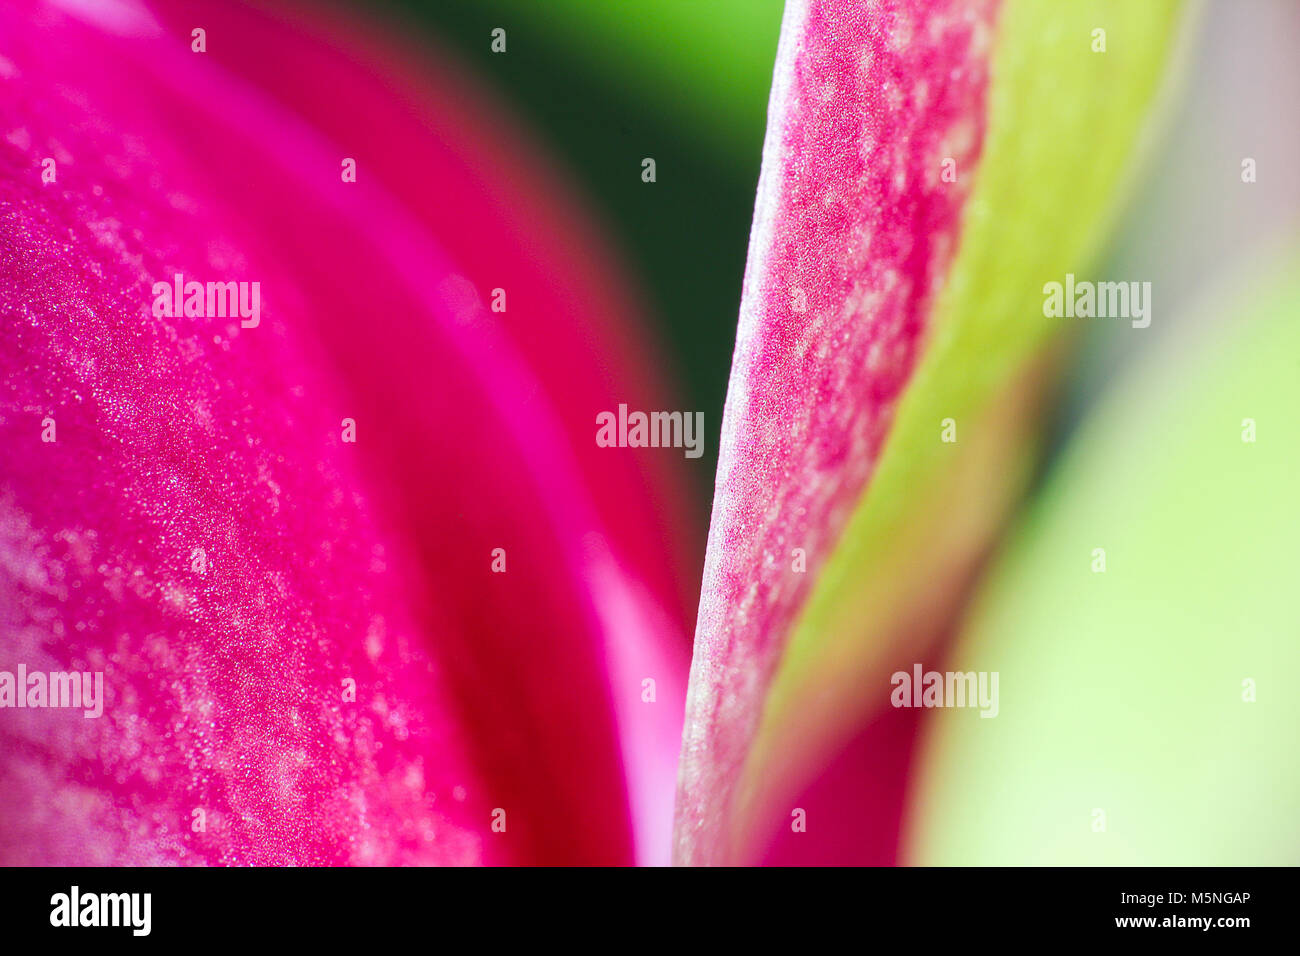 Les feuilles rouges et verts d'orchid blossom, macro photo Banque D'Images